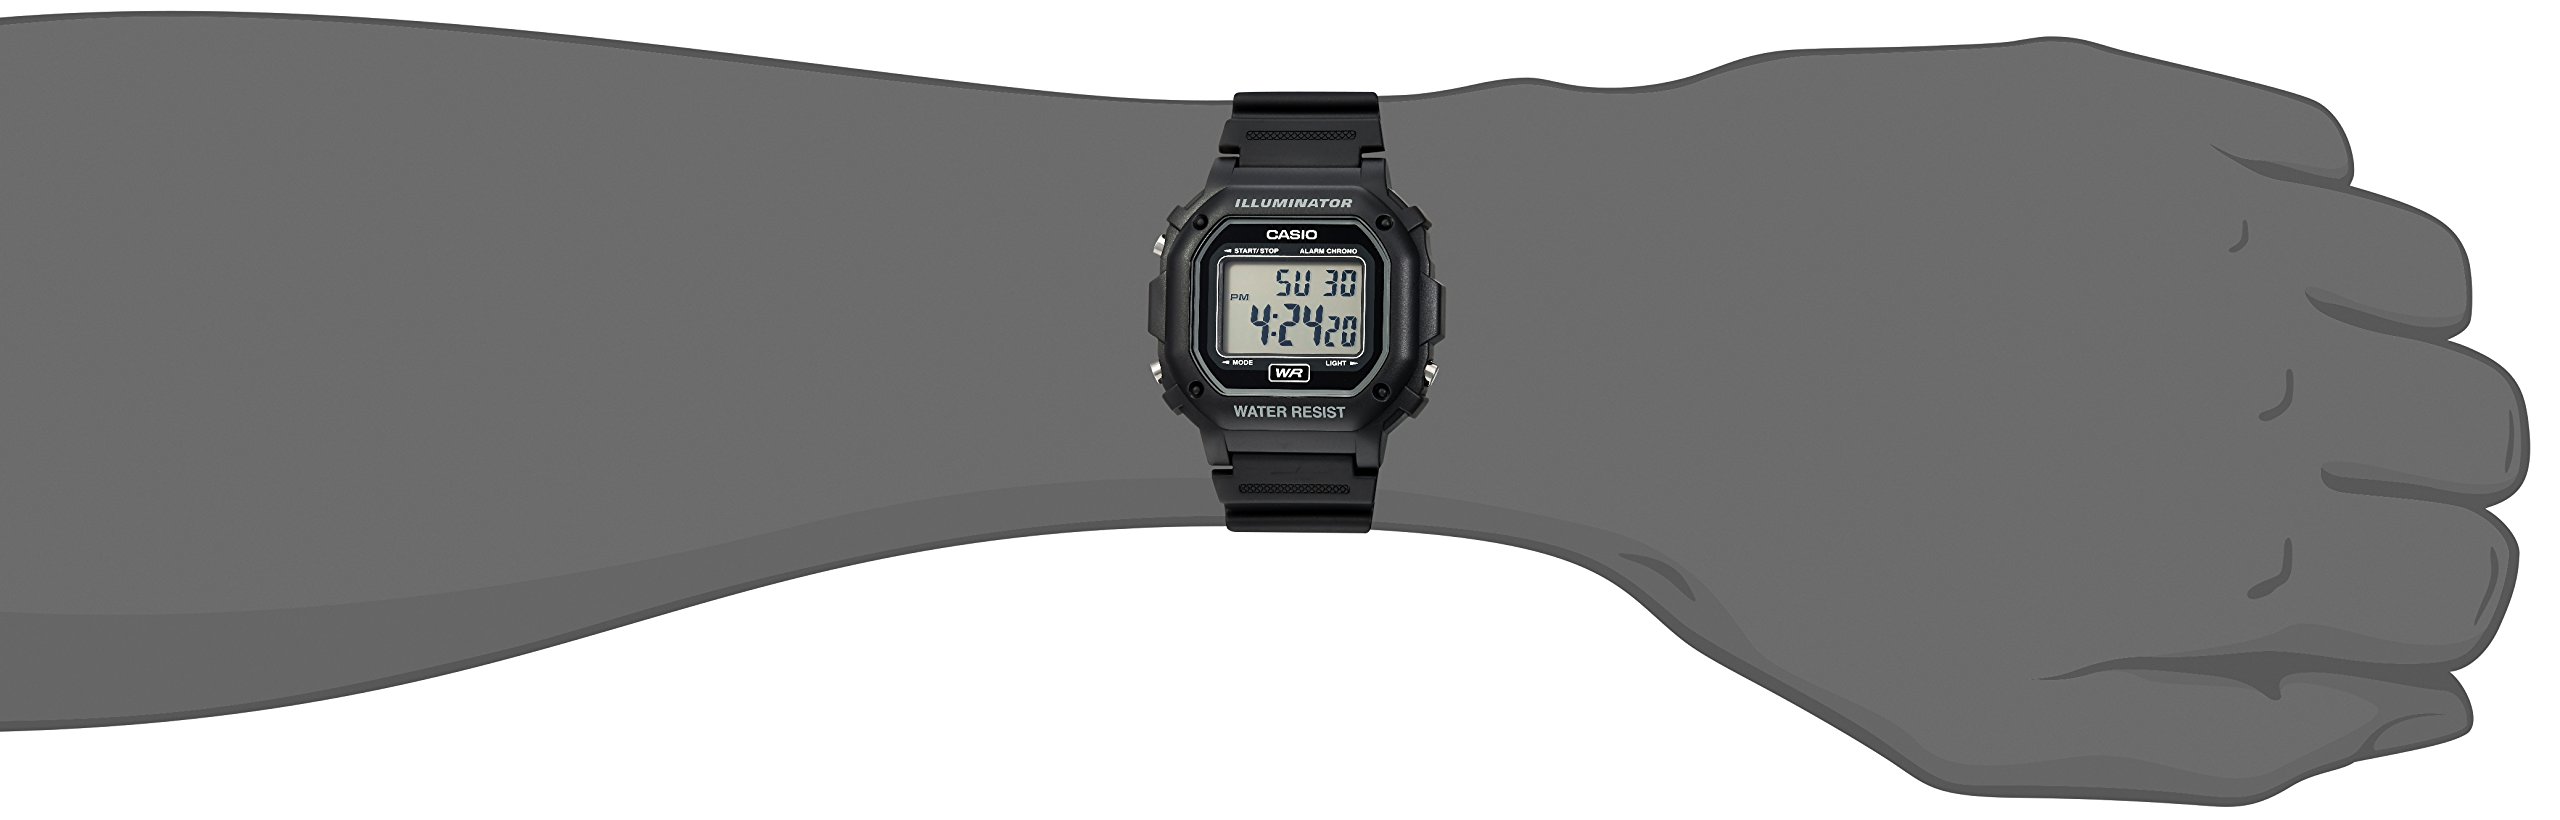 Casio Unisex F-108WH-1ACF Big Square Digital Display Quartz Black Watch